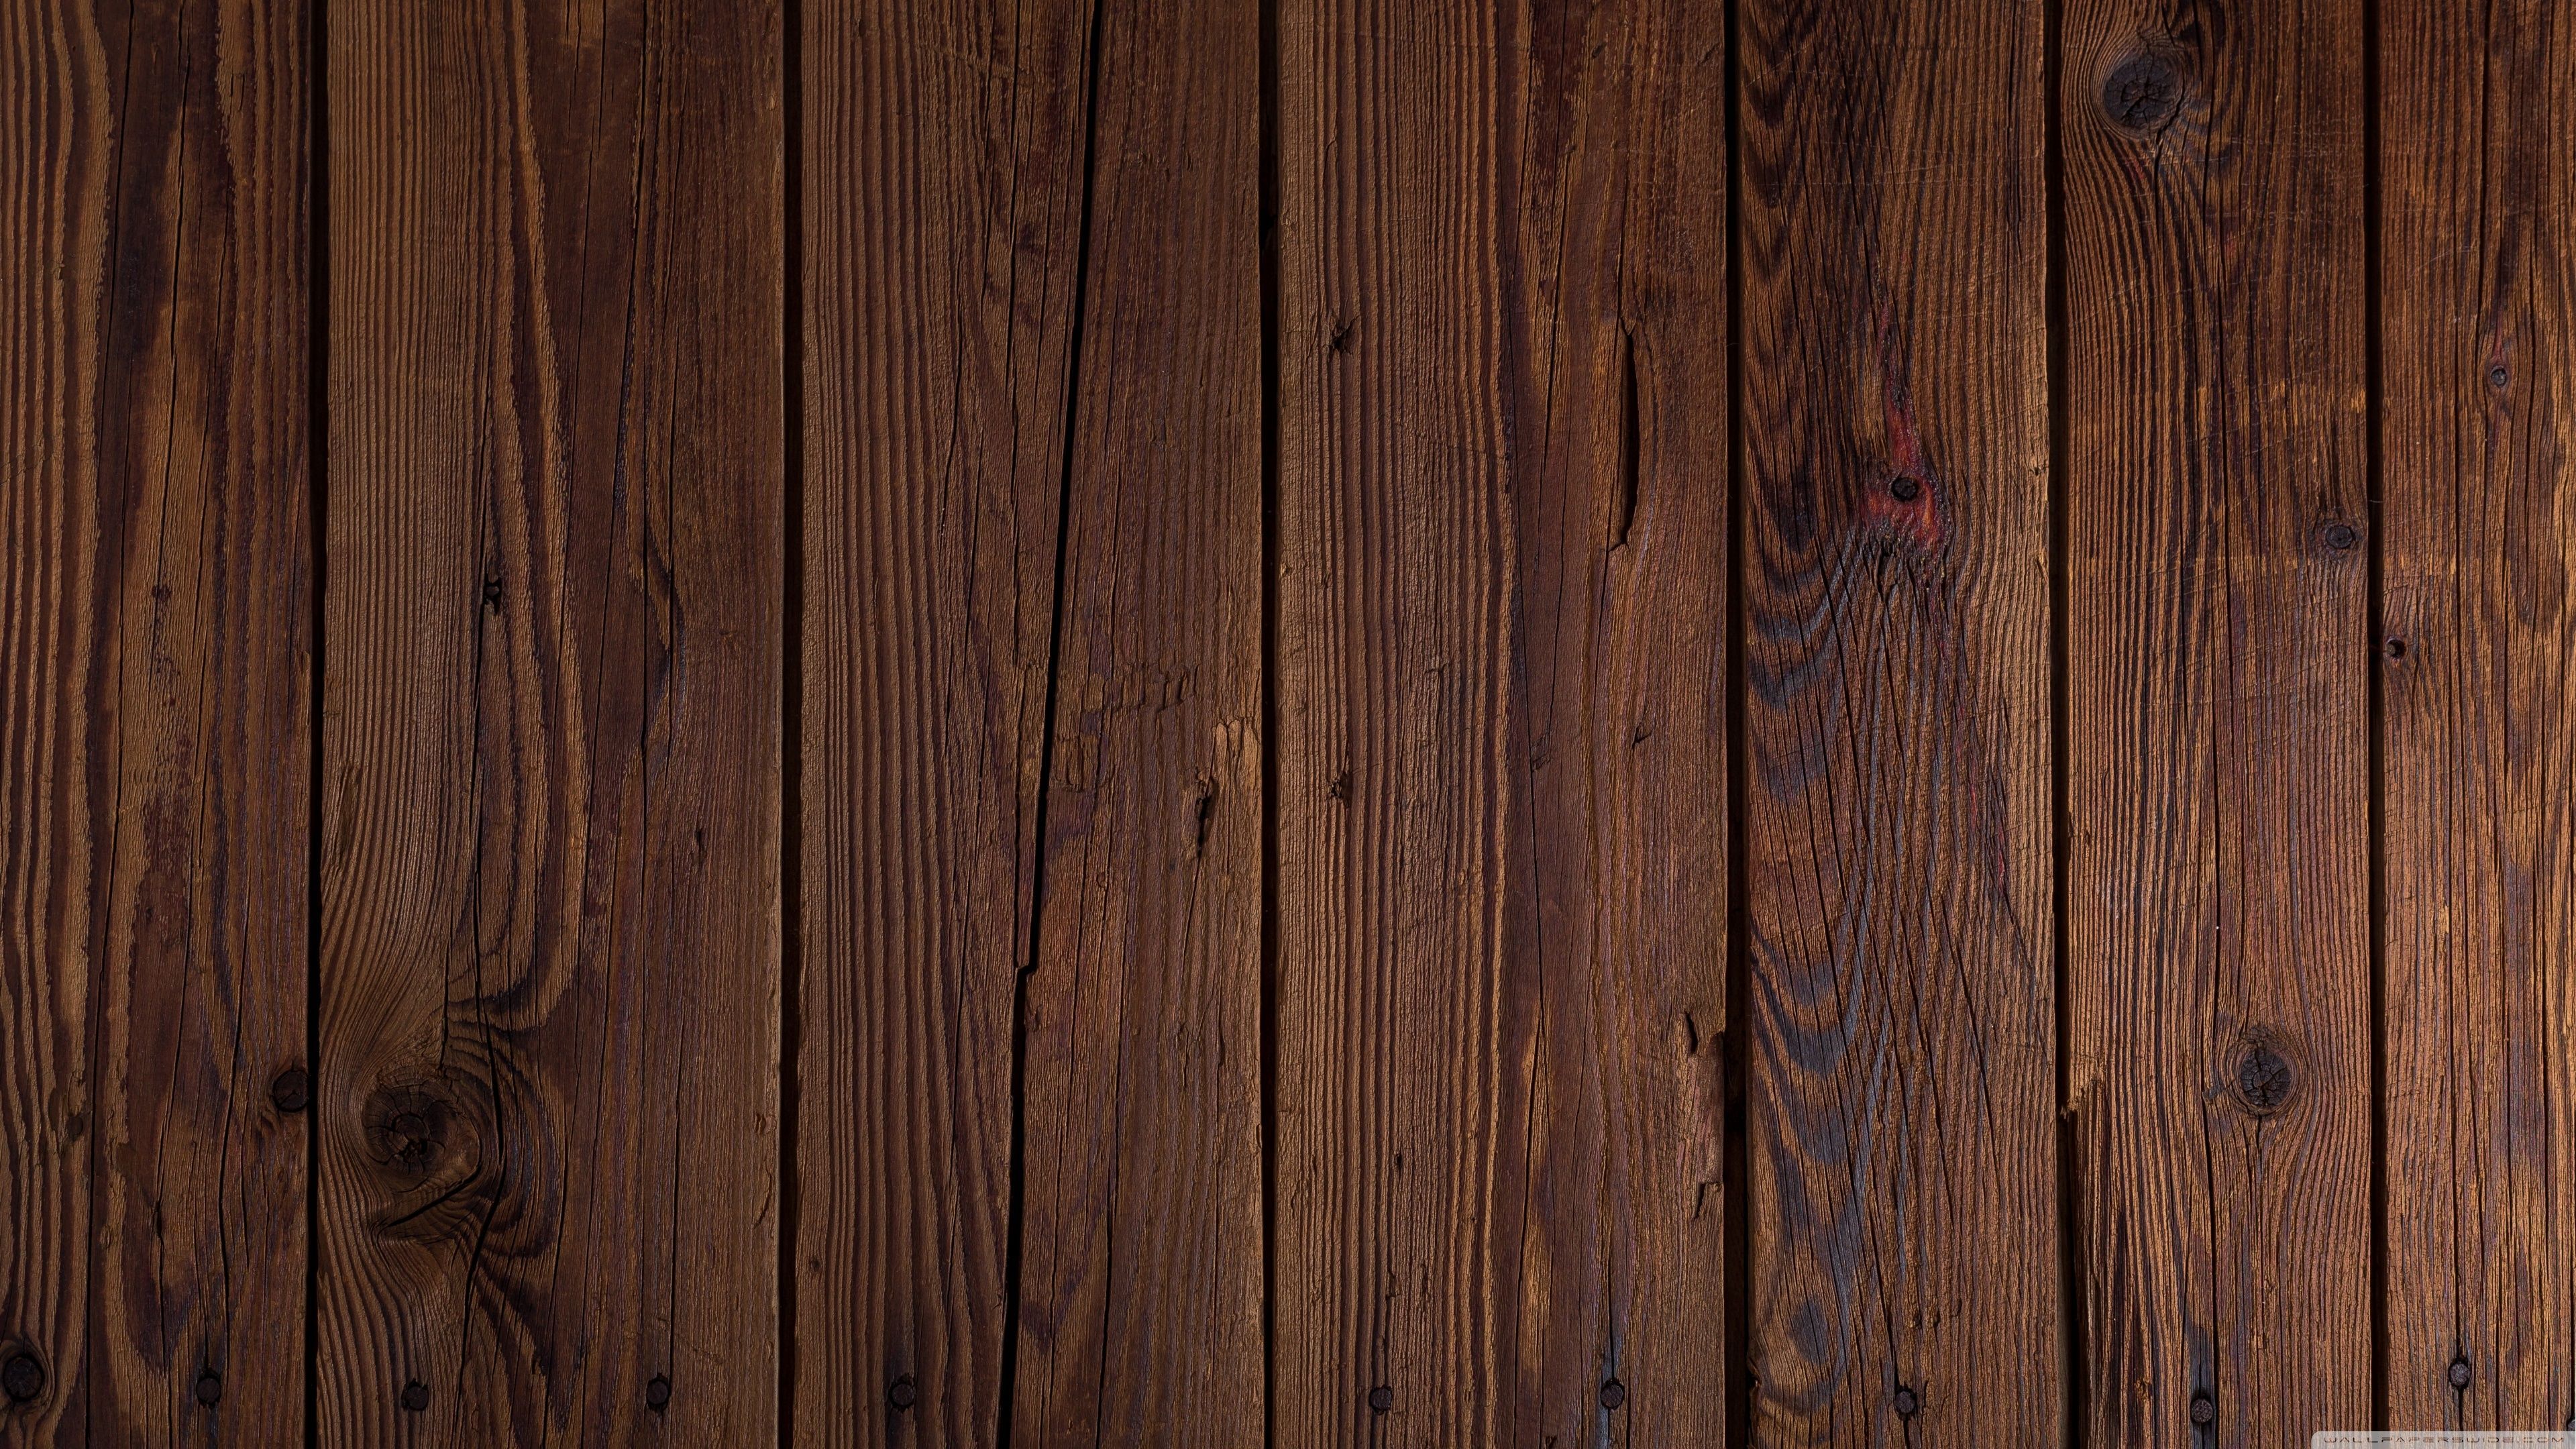 Gỗ: Vẻ đẹp tự nhiên và độc đáo của gỗ được tường thuật hoàn hảo trong bức tranh này. Khai thác tối đa sự kết hợp của các loại gỗ quý hiếm, hãy cảm nhận sự tinh tế và trang nhã kết hợp với độ bền của gỗ.